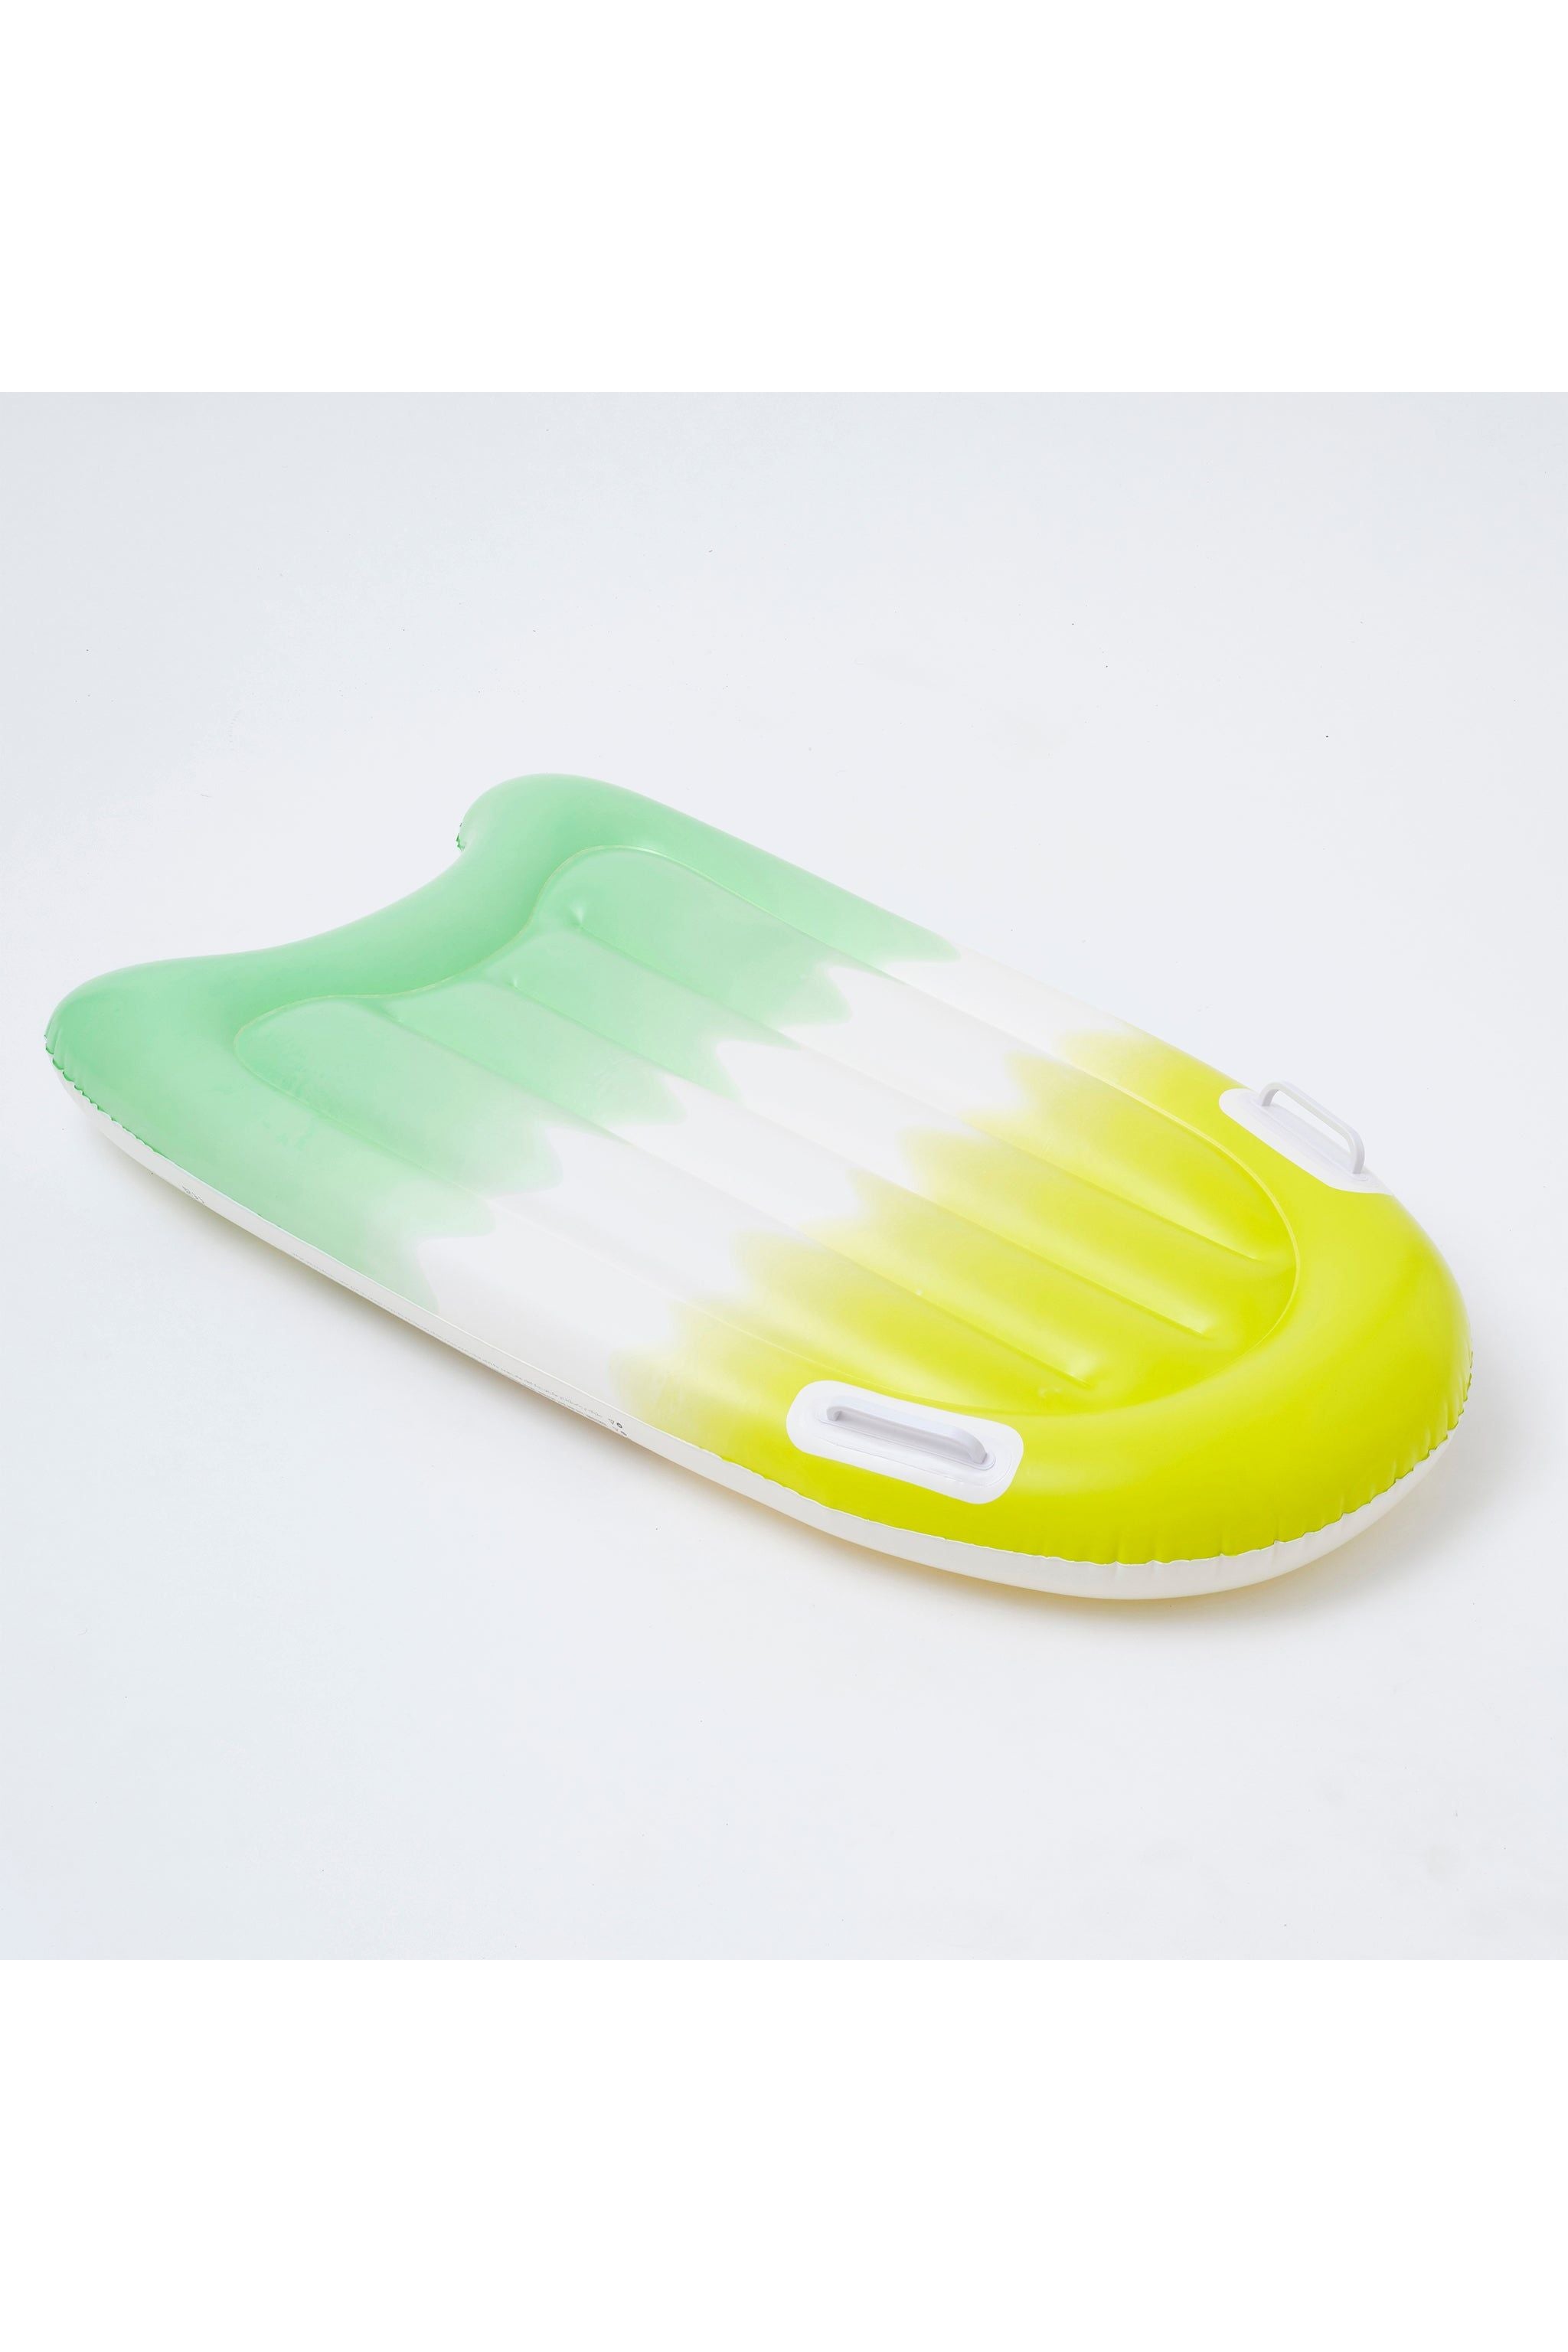 Inflatable Boogie Board Sea Seeker Ocean